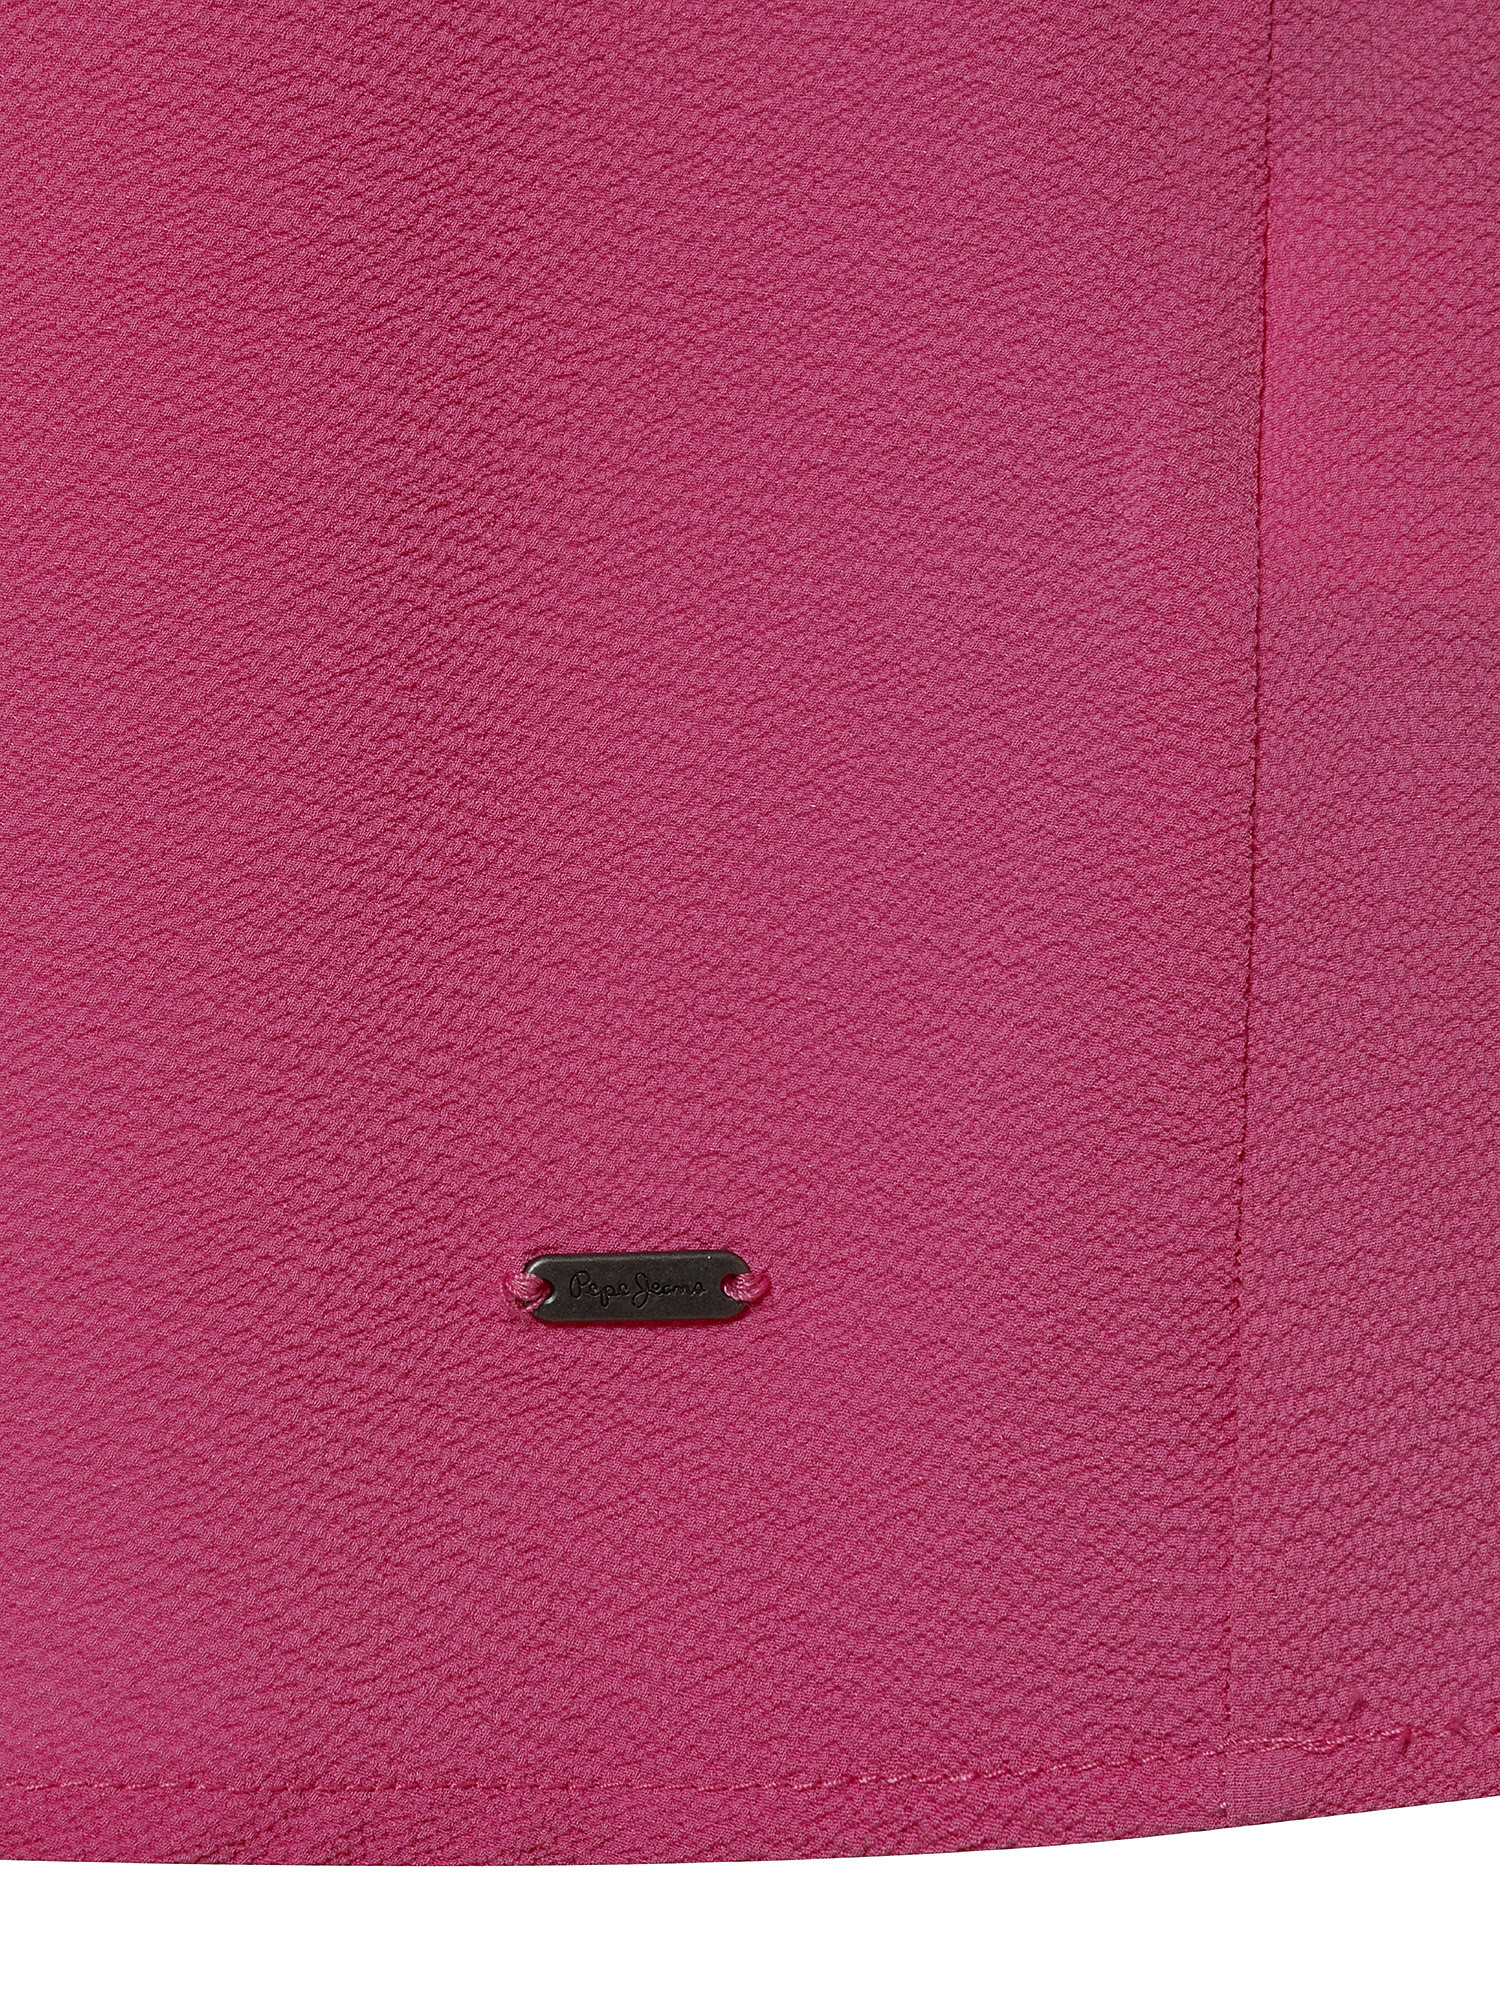 Estefany sleeveless top, Pink Flamingo, large image number 2